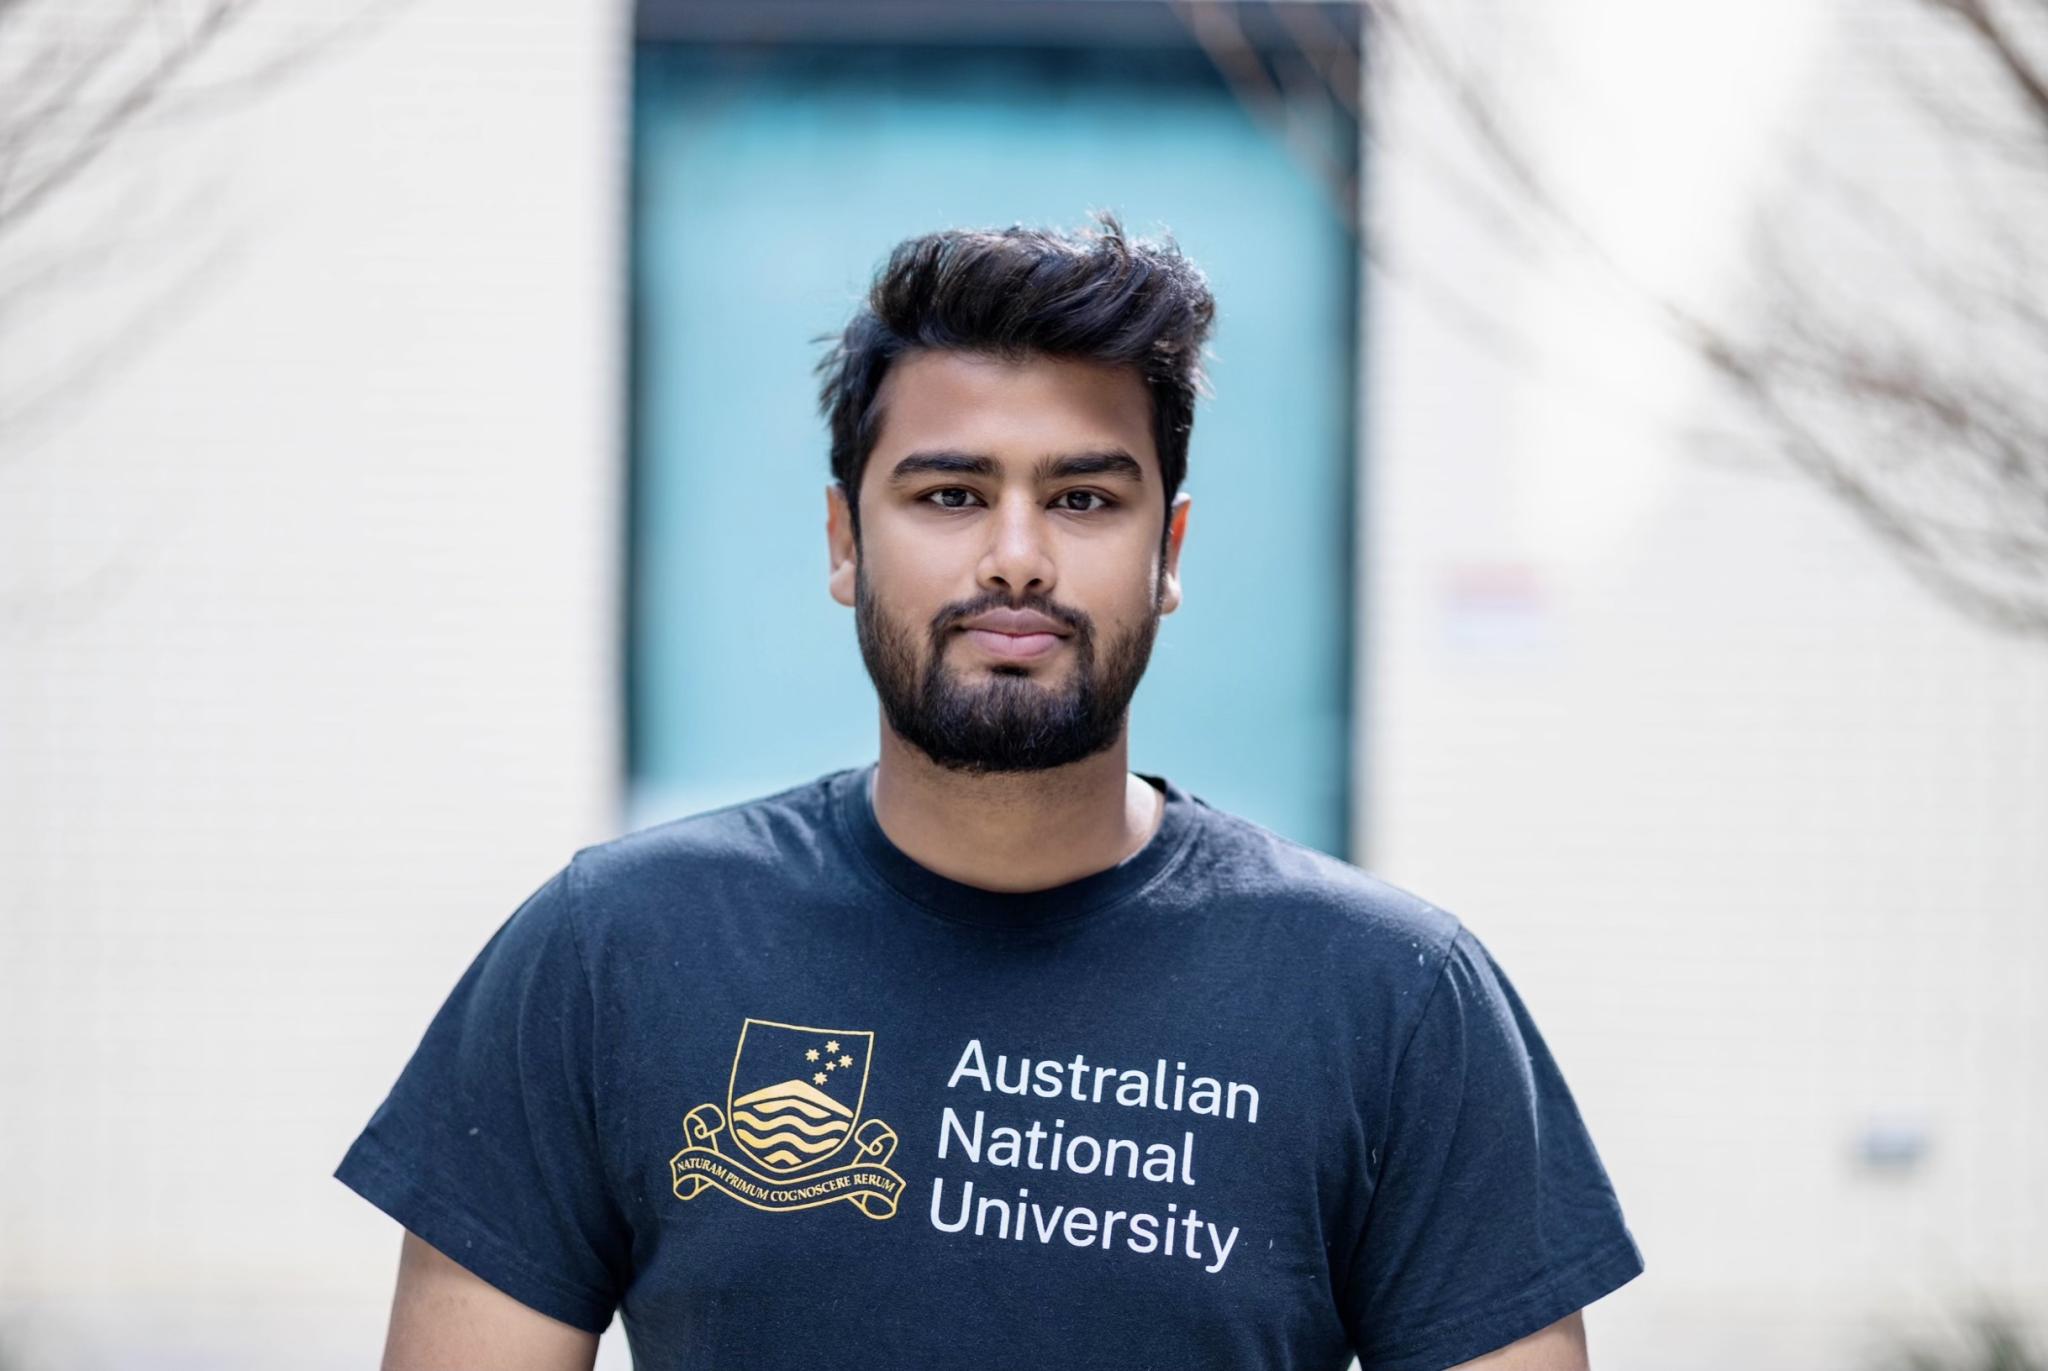 Student Sai Hossain looking at camera wearing an ANU shirt